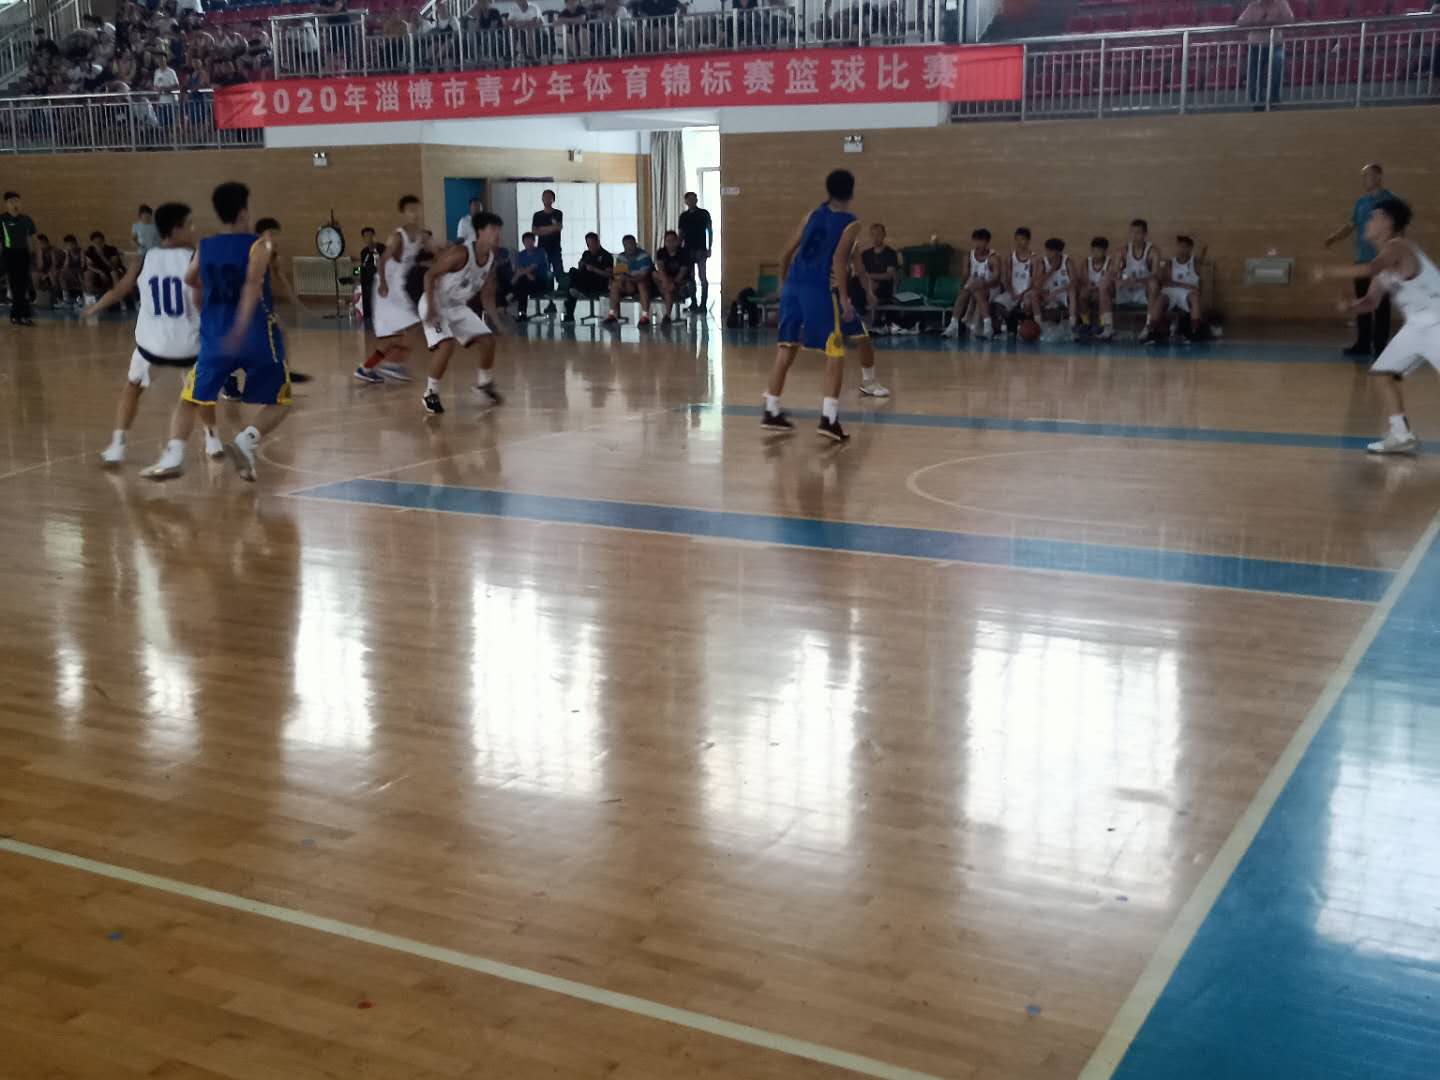 2020年淄博市青少年体育锦标赛篮球比赛顺利结束